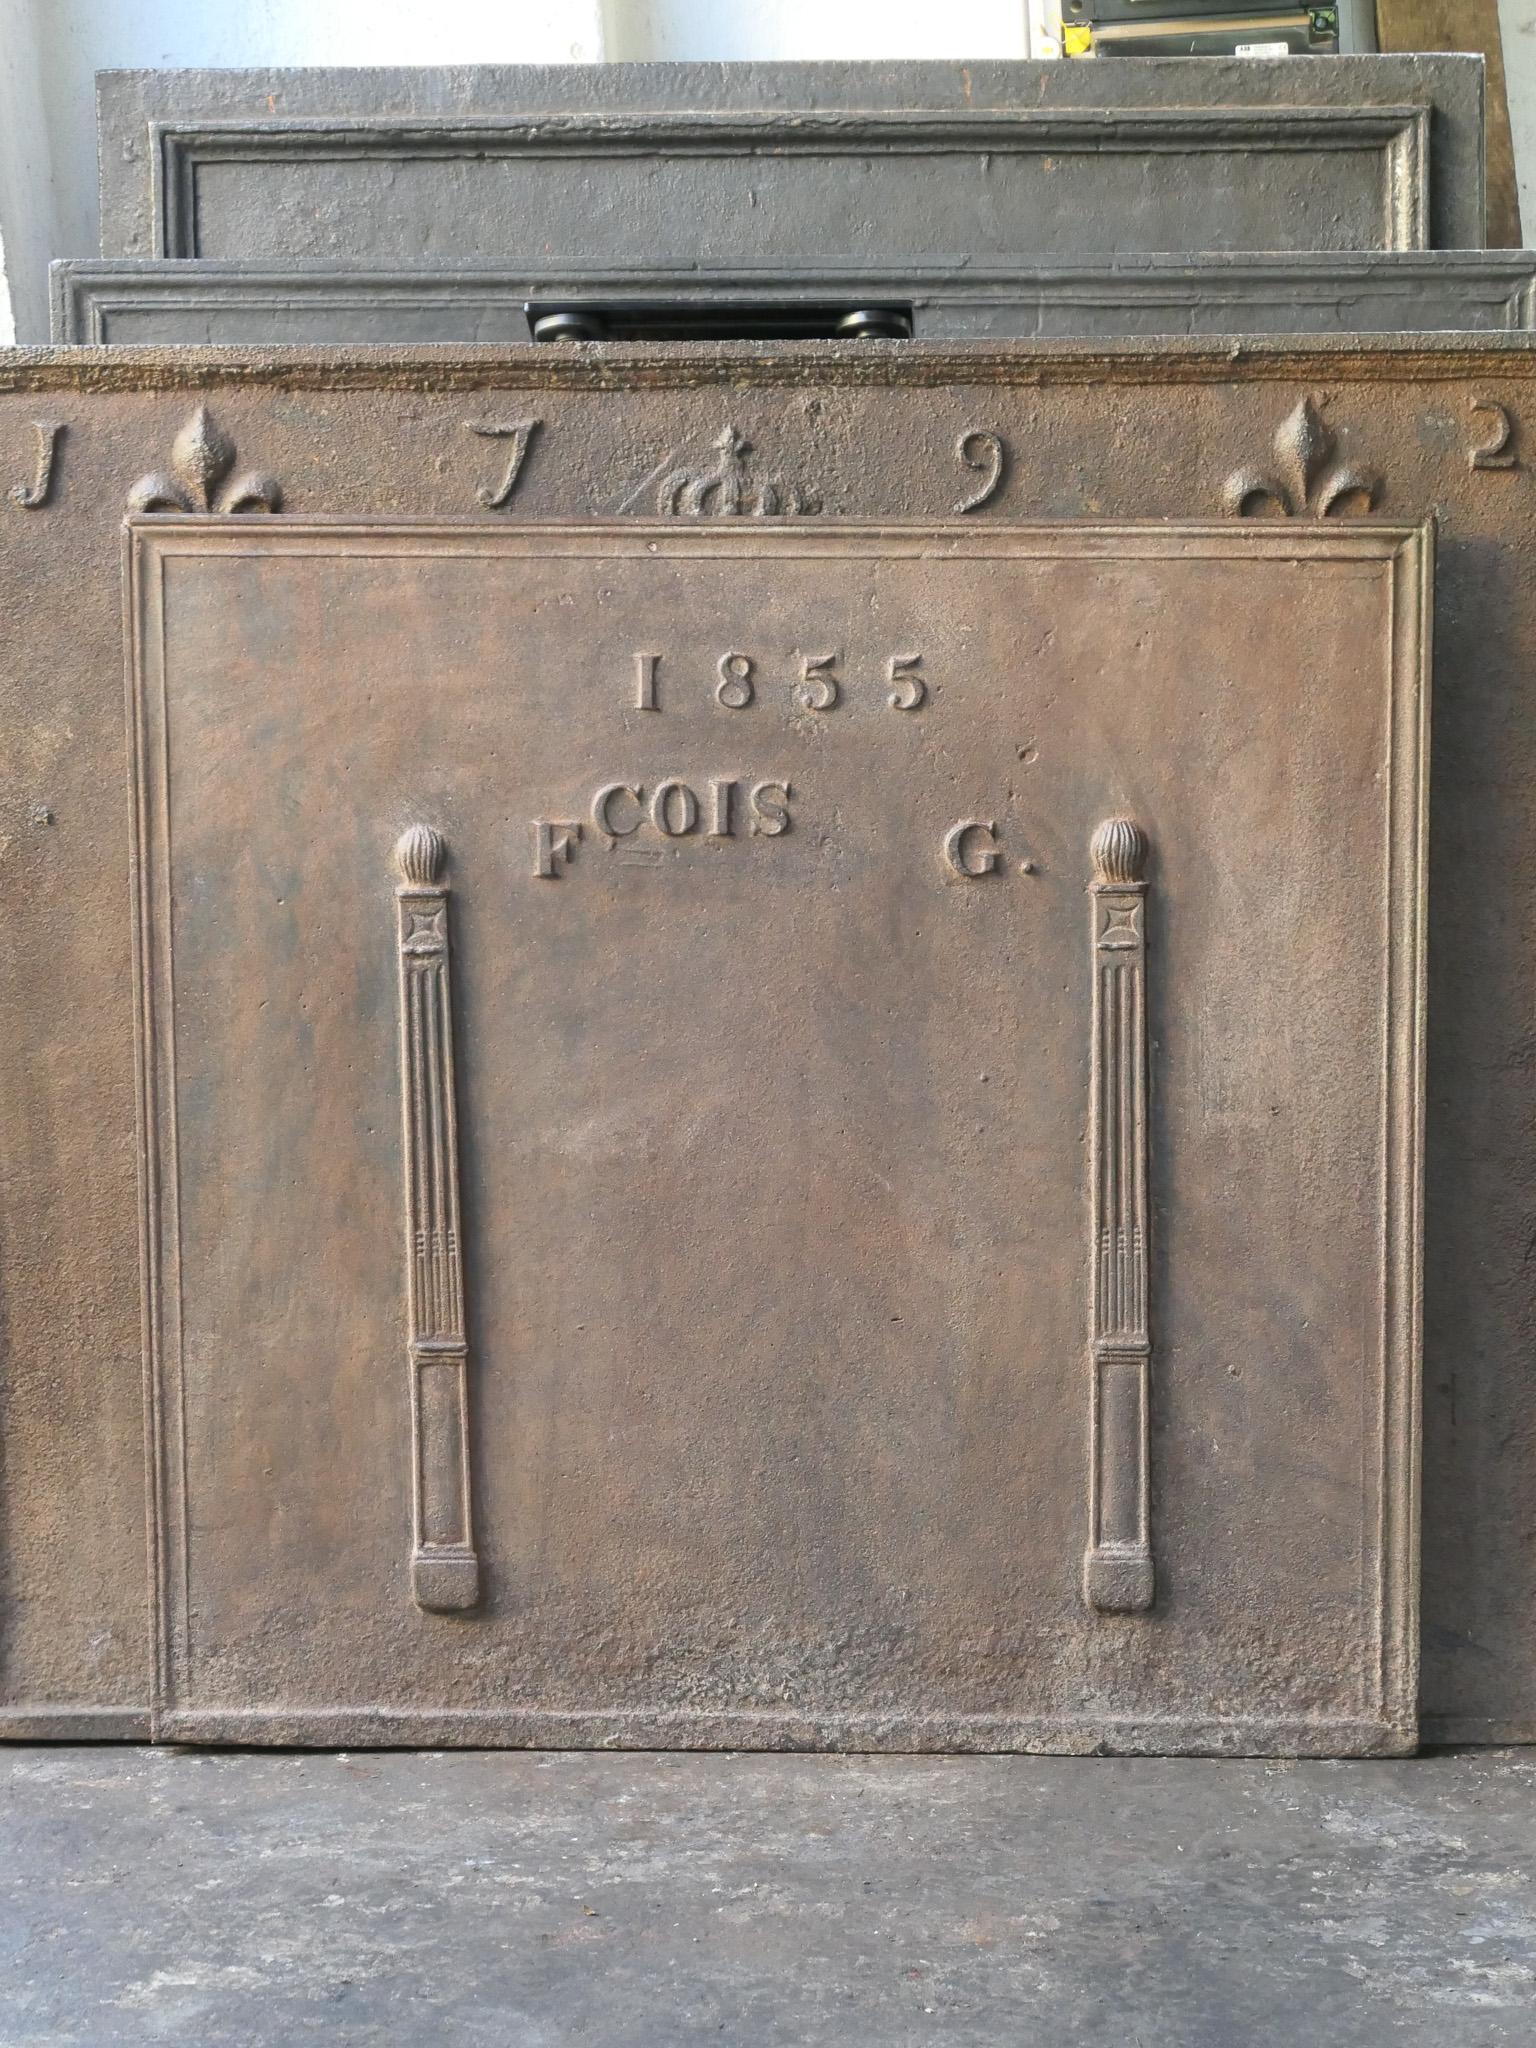 Plaque de cheminée néoclassique française du XIXe siècle avec deux piliers de la liberté. Les piliers symbolisent la valeur liberté, l'une des trois valeurs de la Révolution française. La date de production, 1855, est également gravée sur la plaque